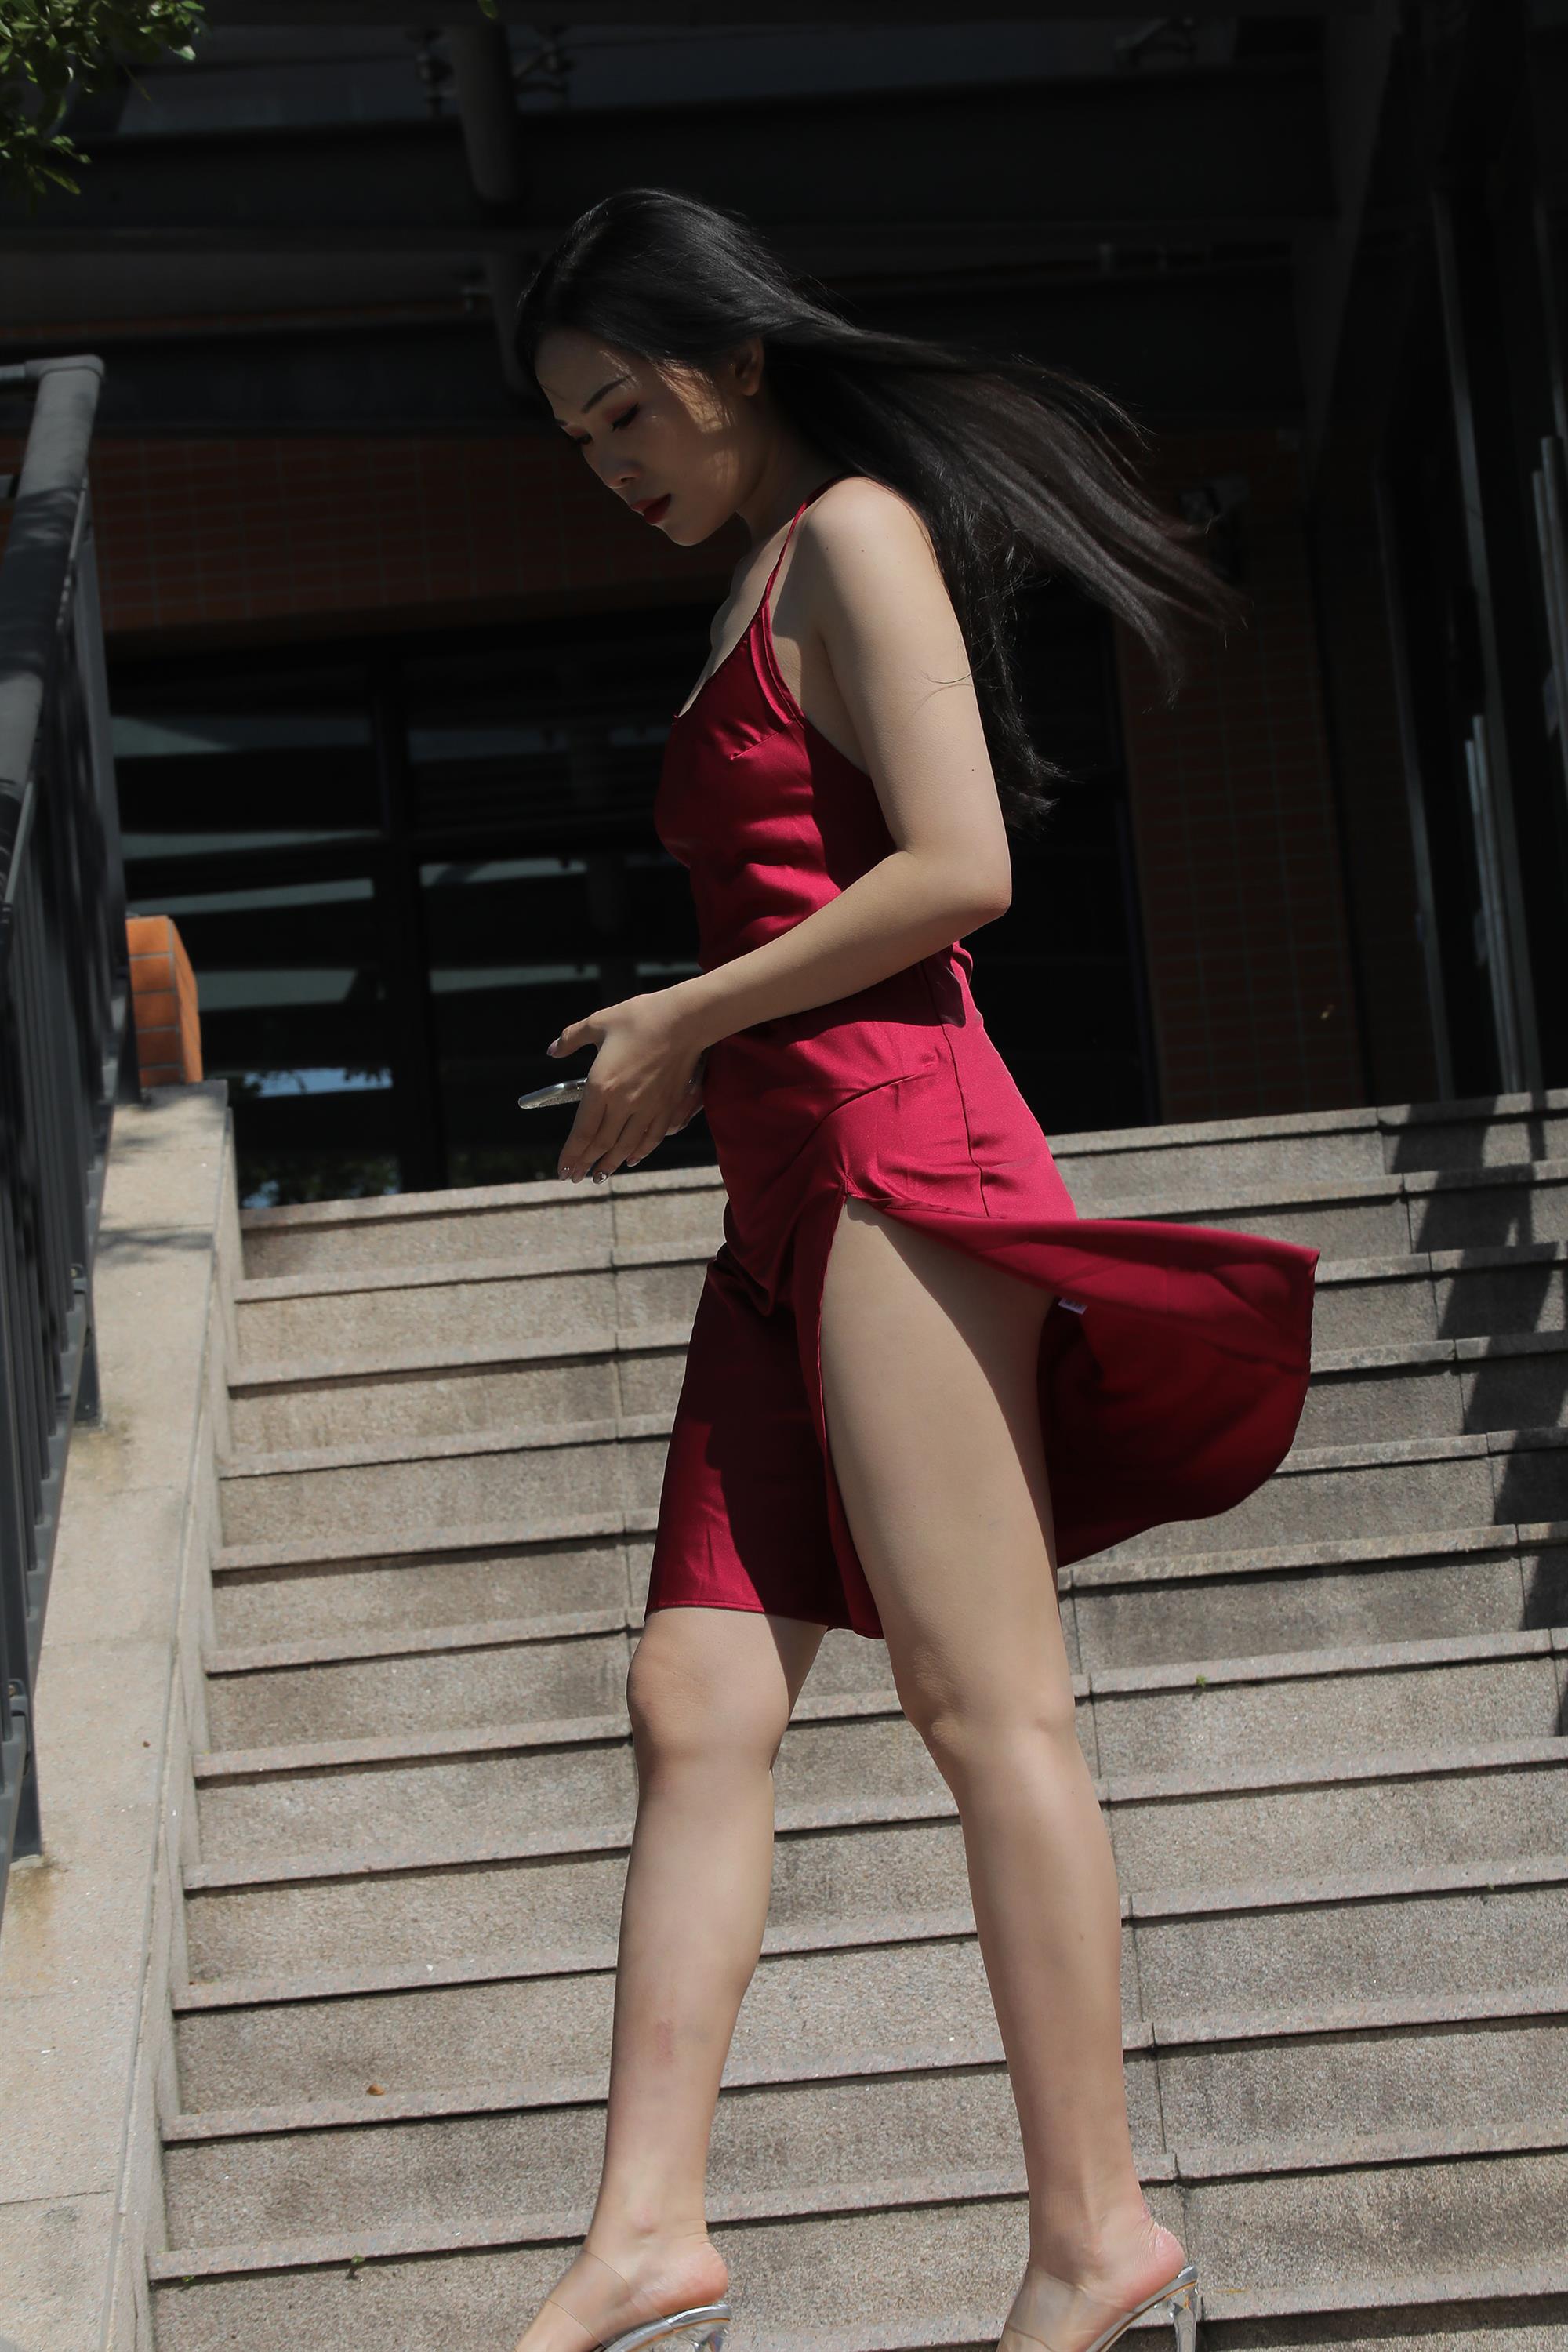 Street beauty in a red dress - 11.jpg